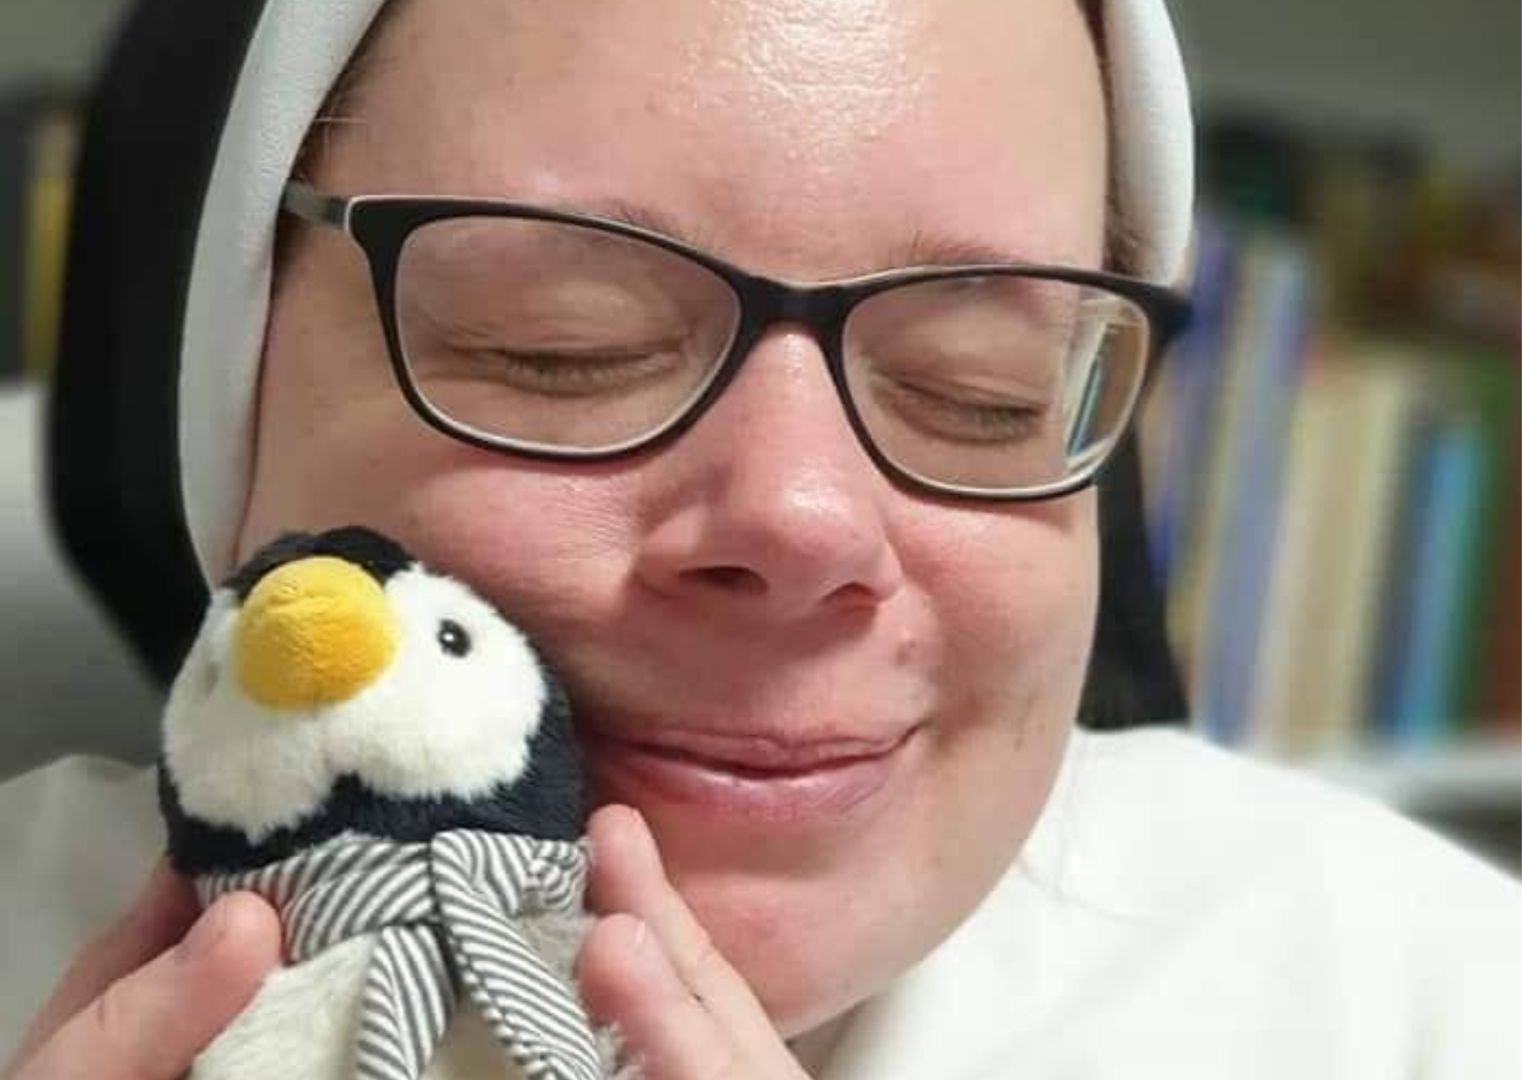 Polska zakonnica w światowym dniu pingwina. Zdjęcie robi furorę w sieci